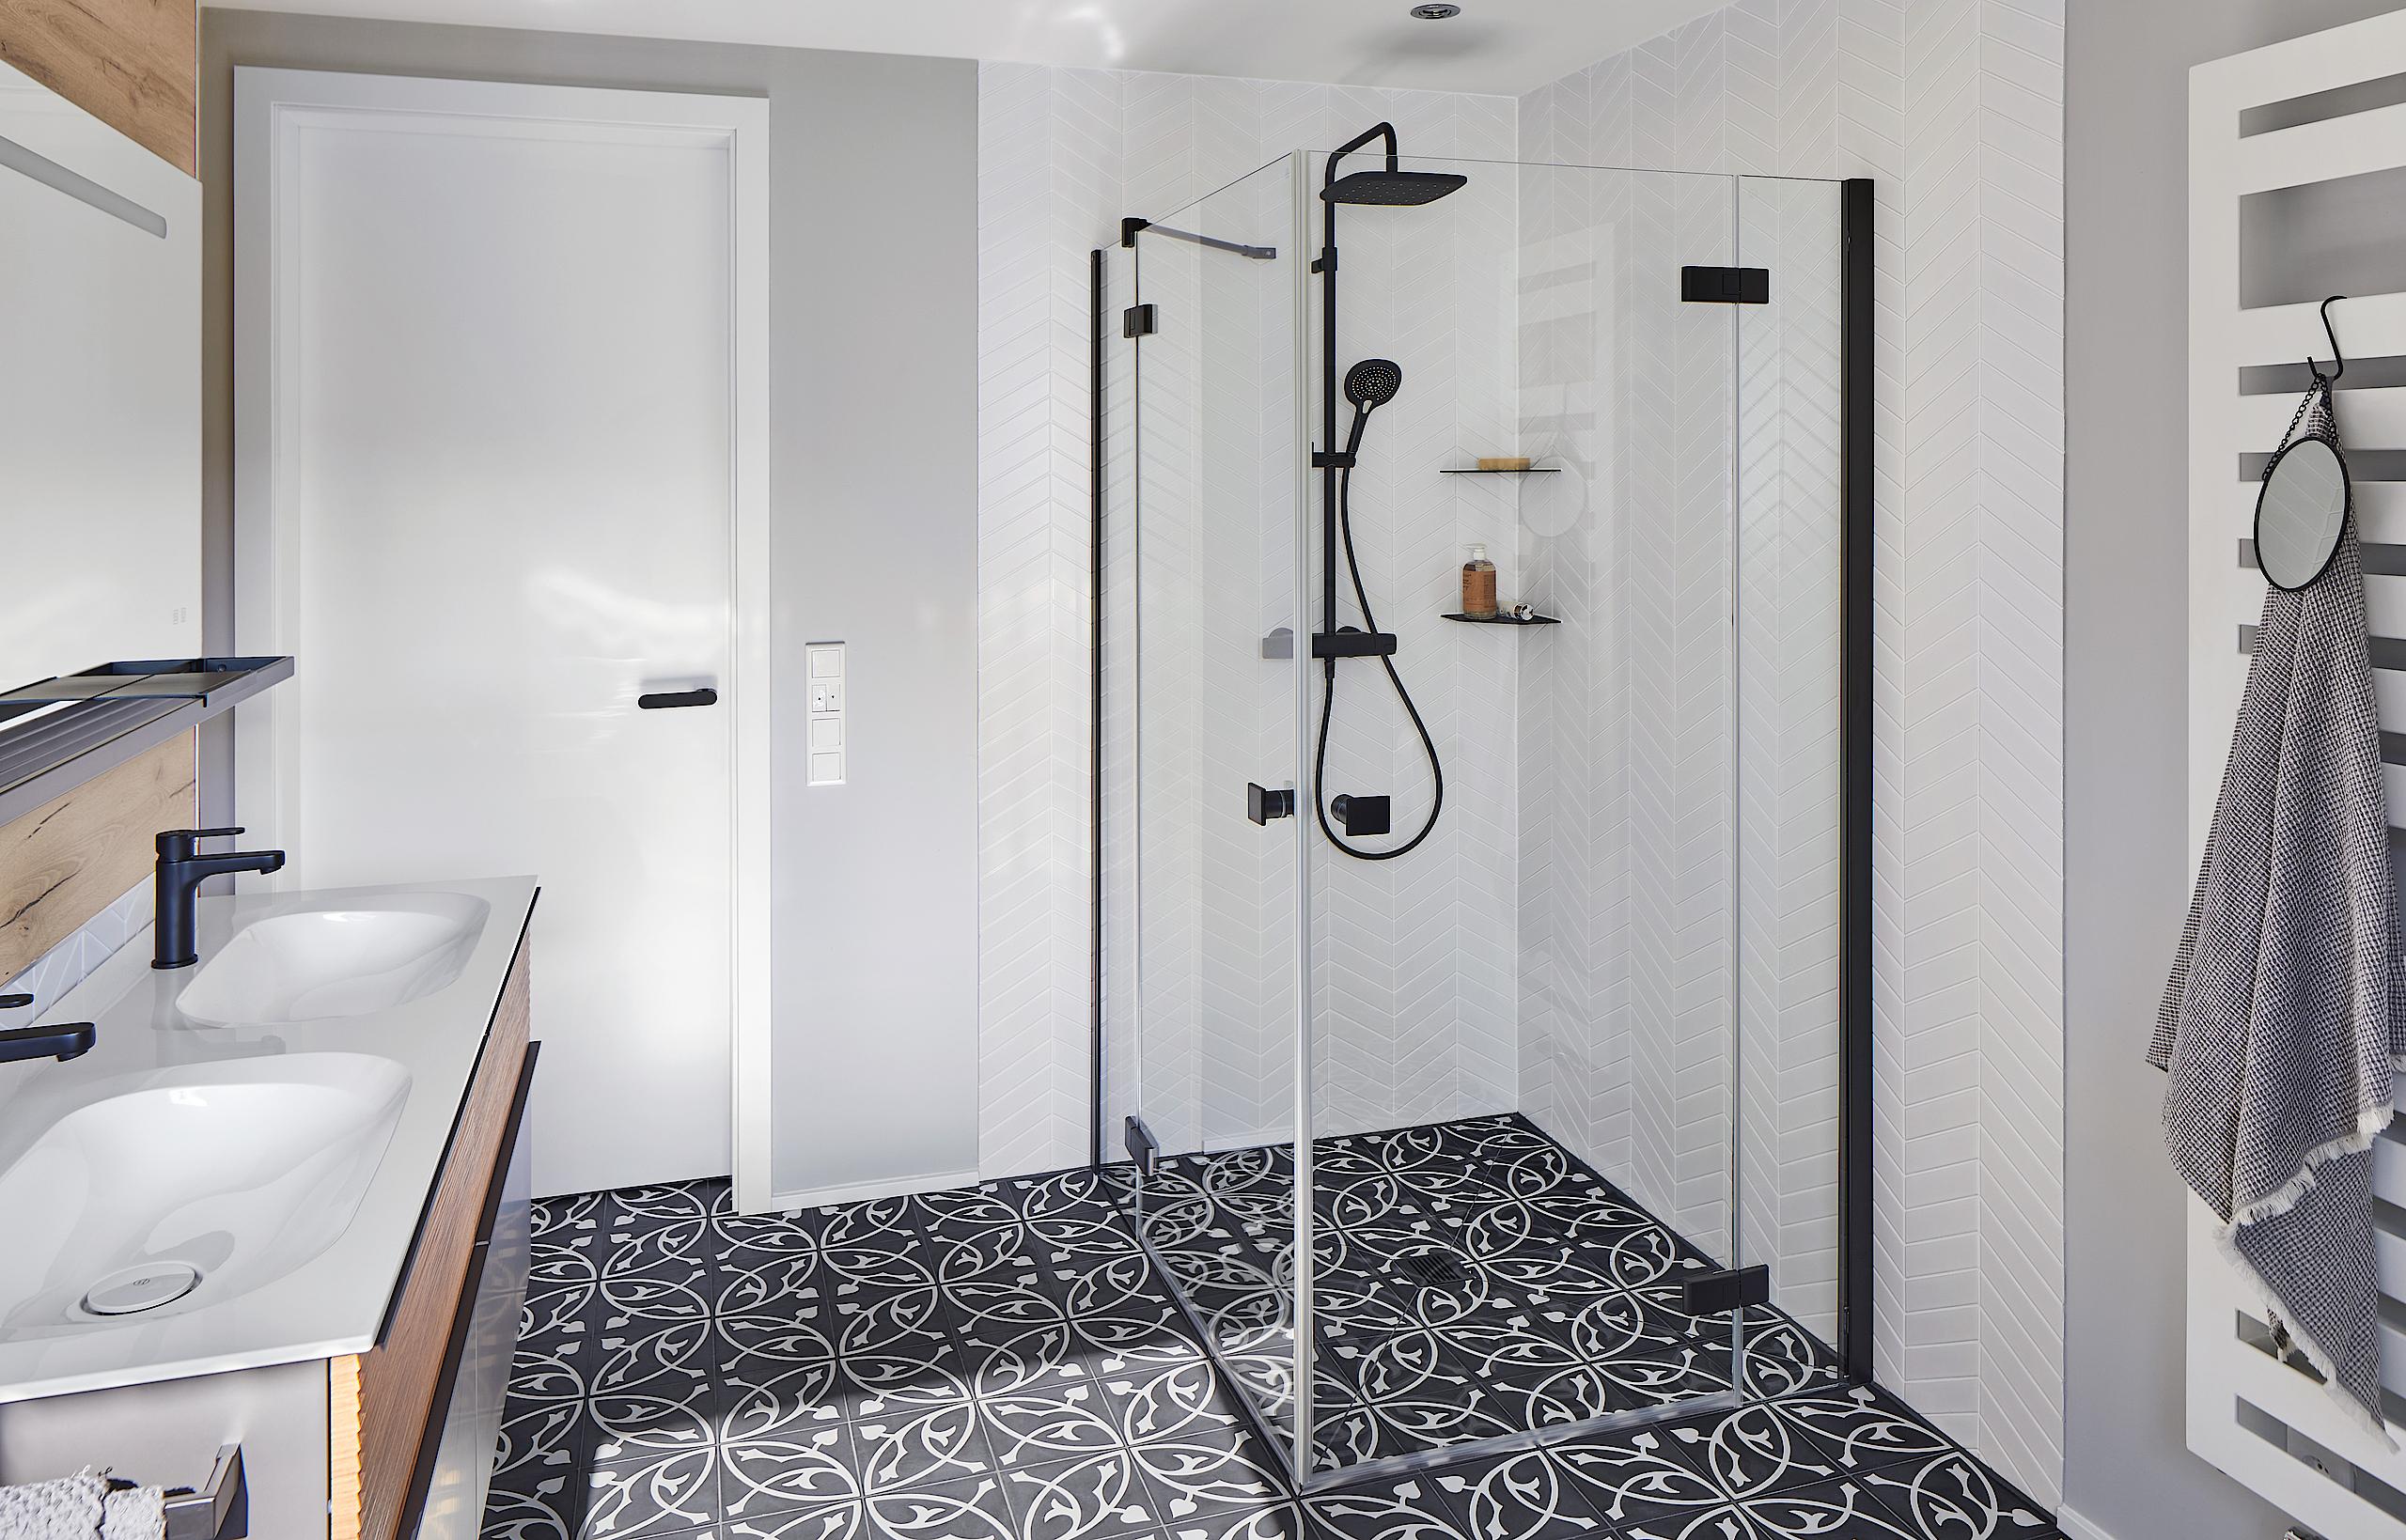 Sprchový kout Kermi MENA v nadčasové barevné kombinaci černá/bílá